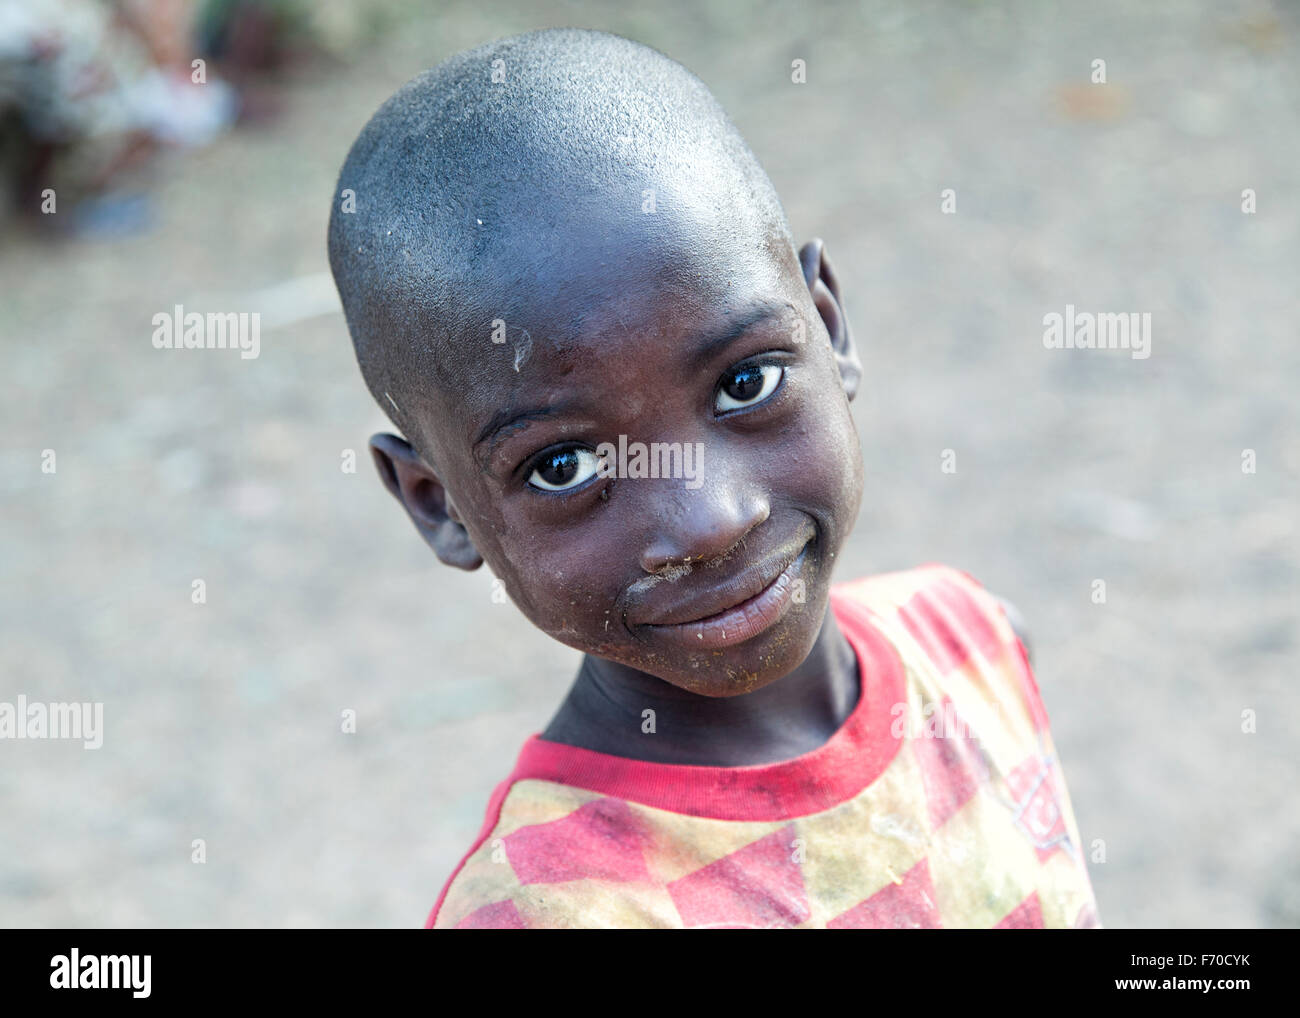 Retrato de un niño africano de la etnia fula sonriendo a la cámara, el examen de la vida cotidiana de la población local en las zonas rurales de Guinea-bissau Foto de stock